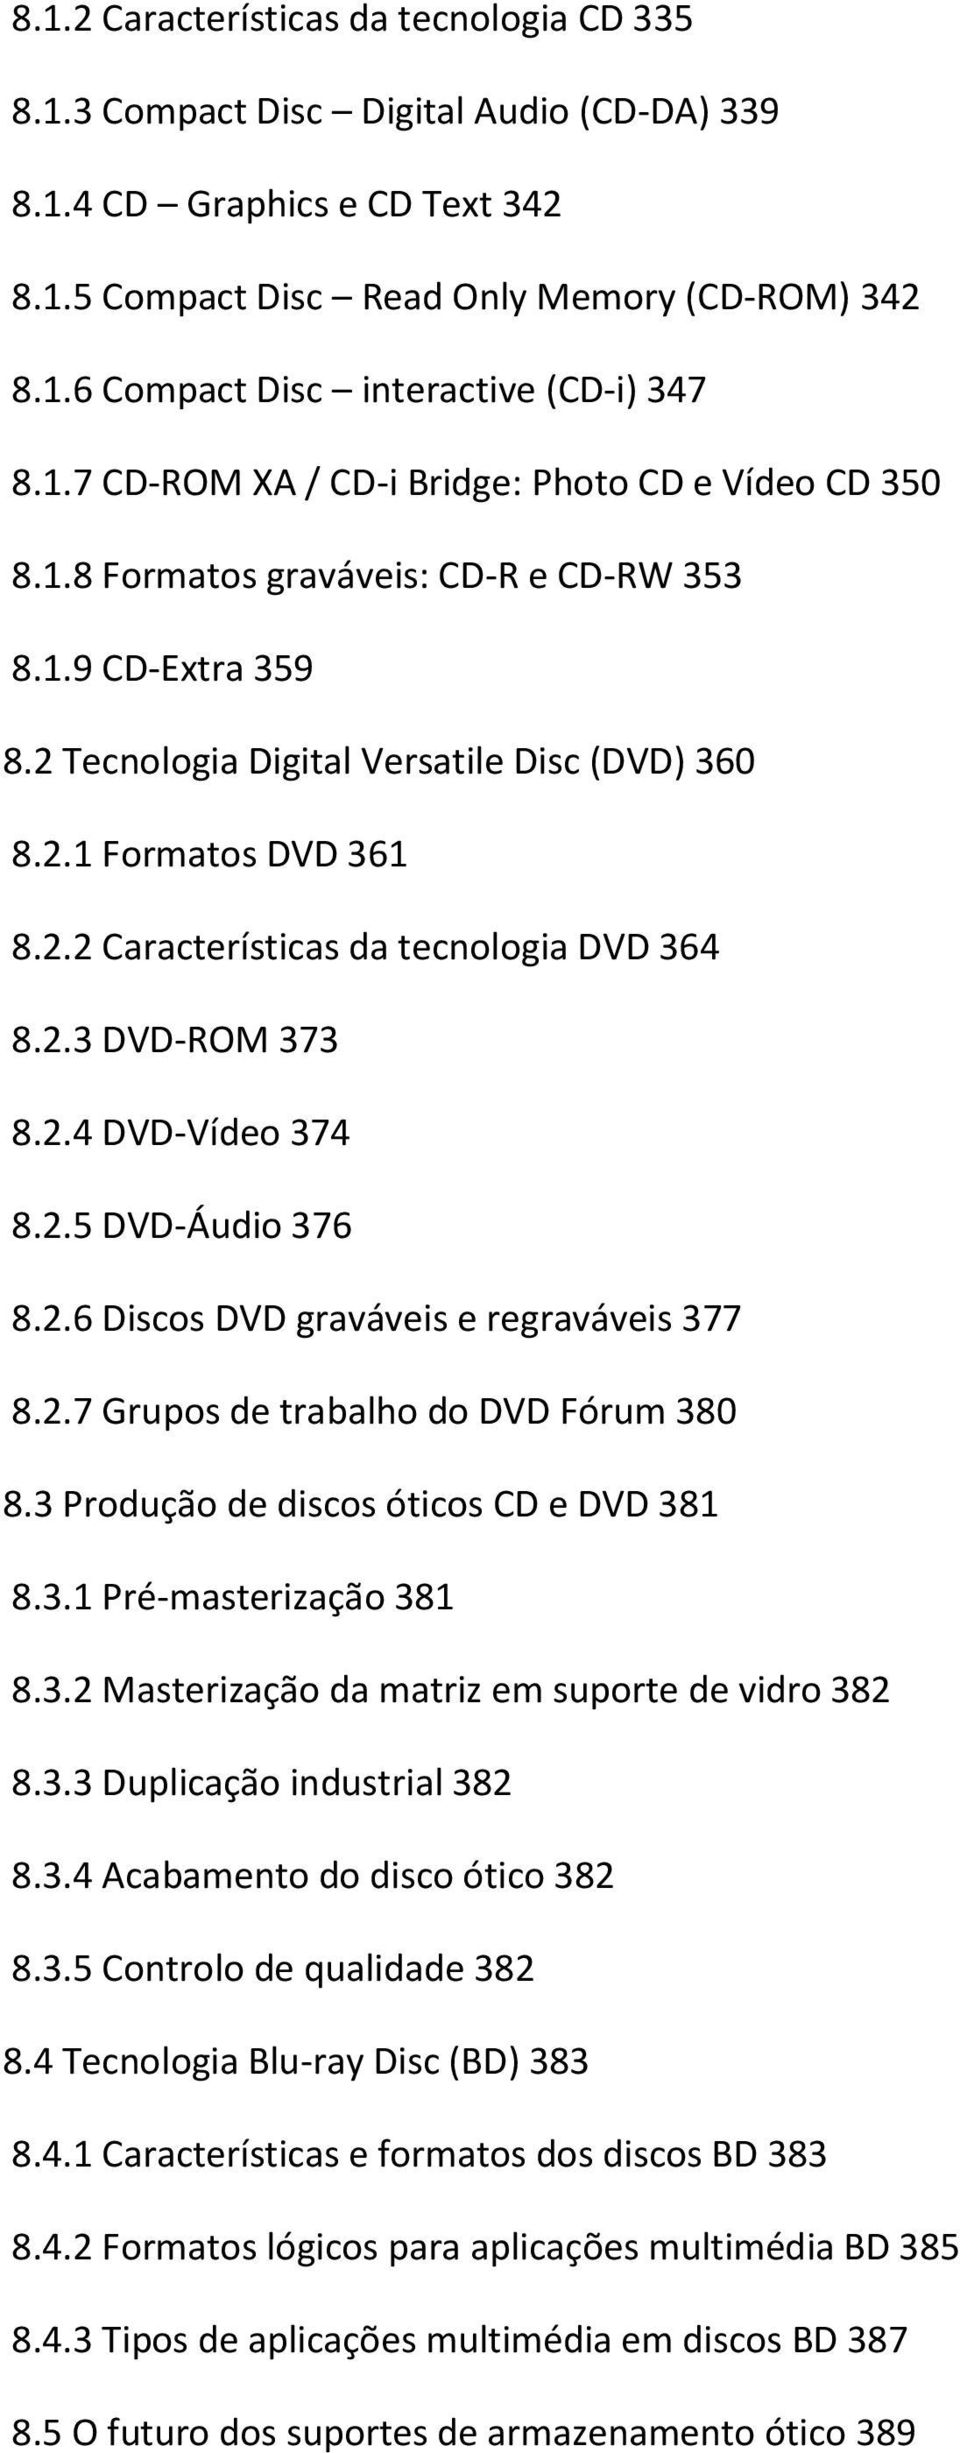 2.3 DVD-ROM 373 8.2.4 DVD-Vídeo 374 8.2.5 DVD-Áudio 376 8.2.6 Discos DVD graváveis e regraváveis 377 8.2.7 Grupos de trabalho do DVD Fórum 380 8.3 Produção de discos óticos CD e DVD 381 8.3.1 Pré-masterização 381 8.